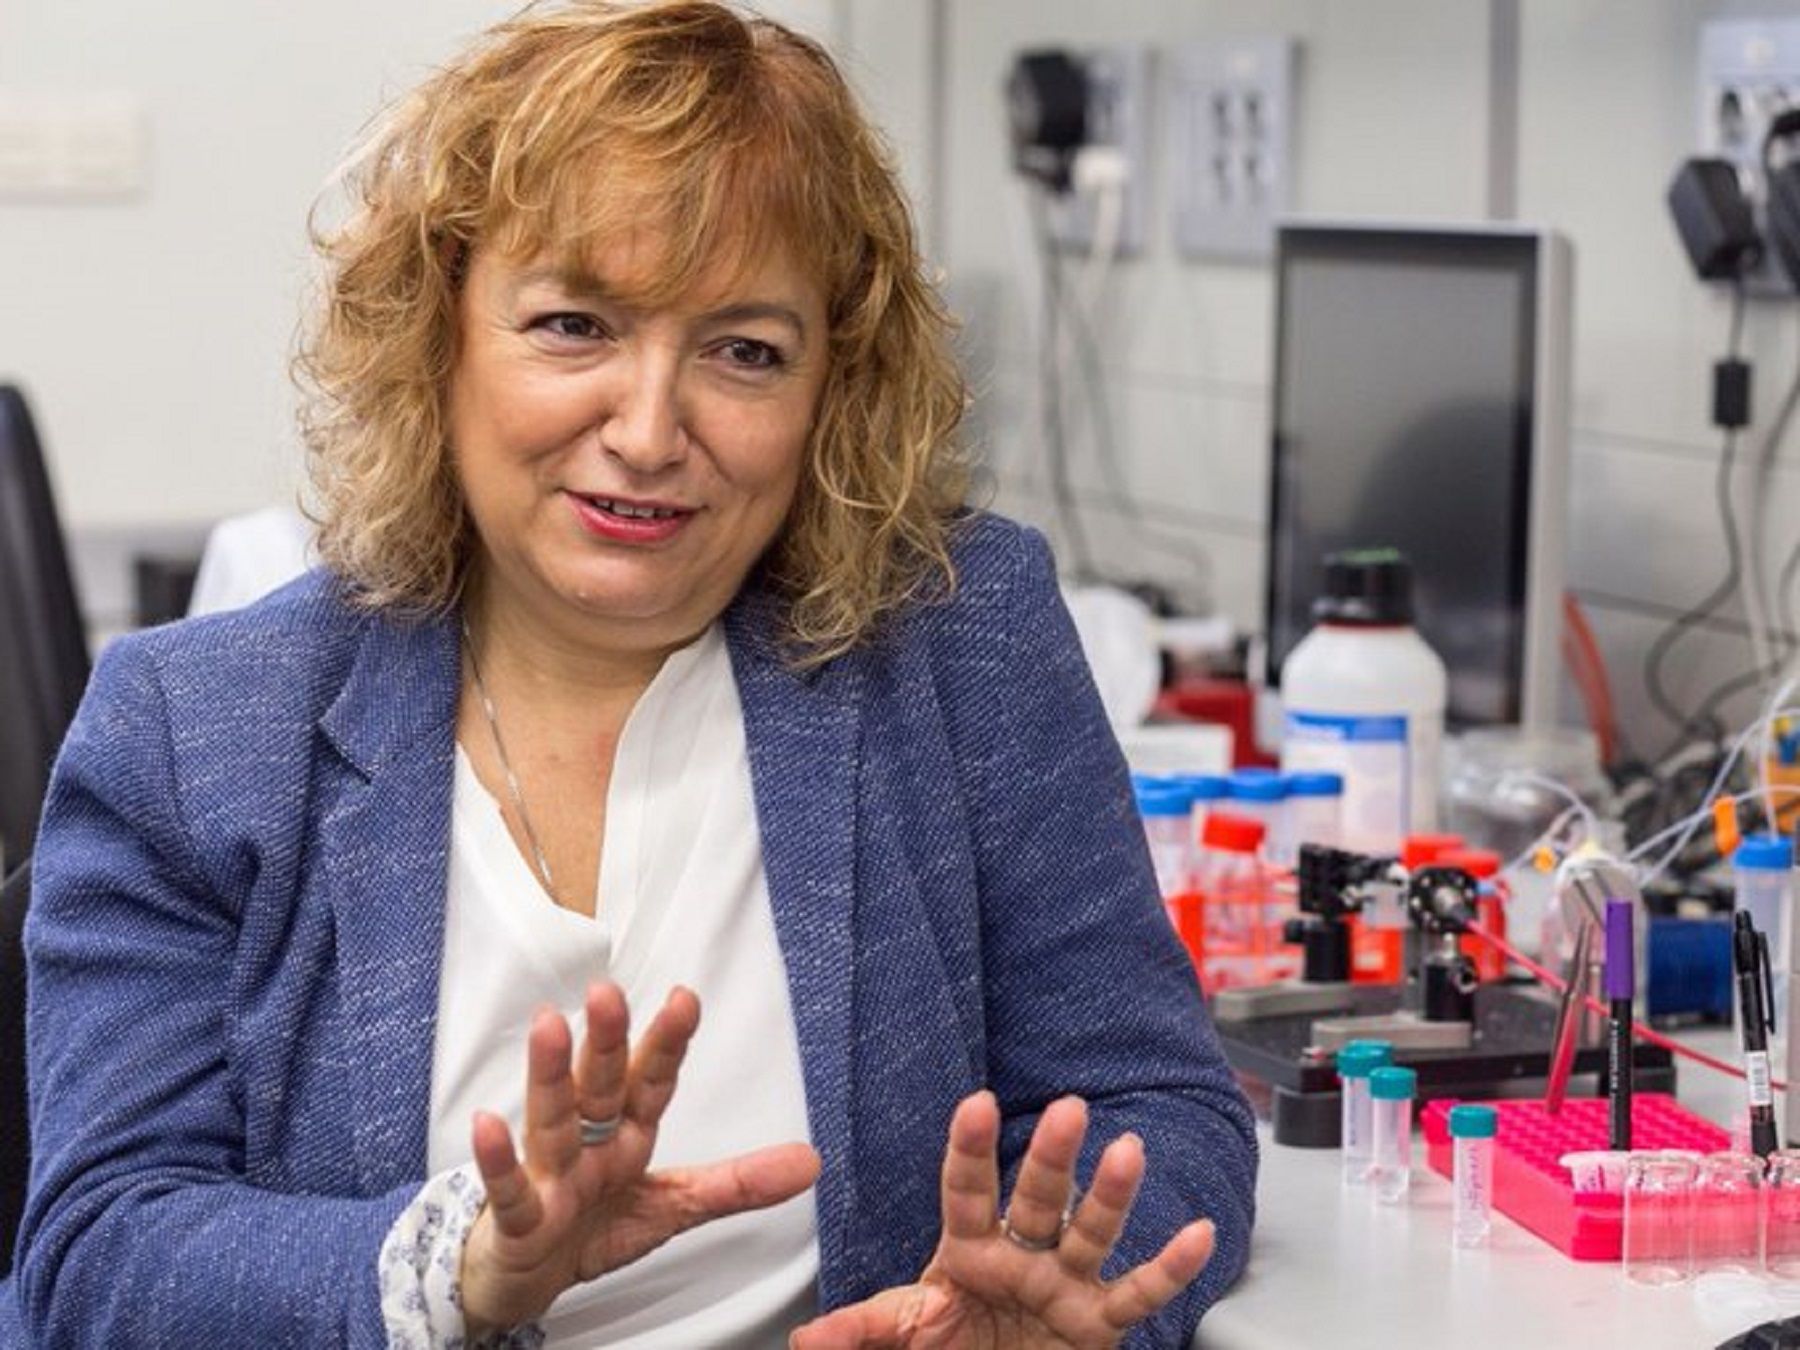 La científica Laura María Lechuga en su lugar de trabajo, el Instituto Catalán de Nanociencia y Nanotecnología. | ICN2